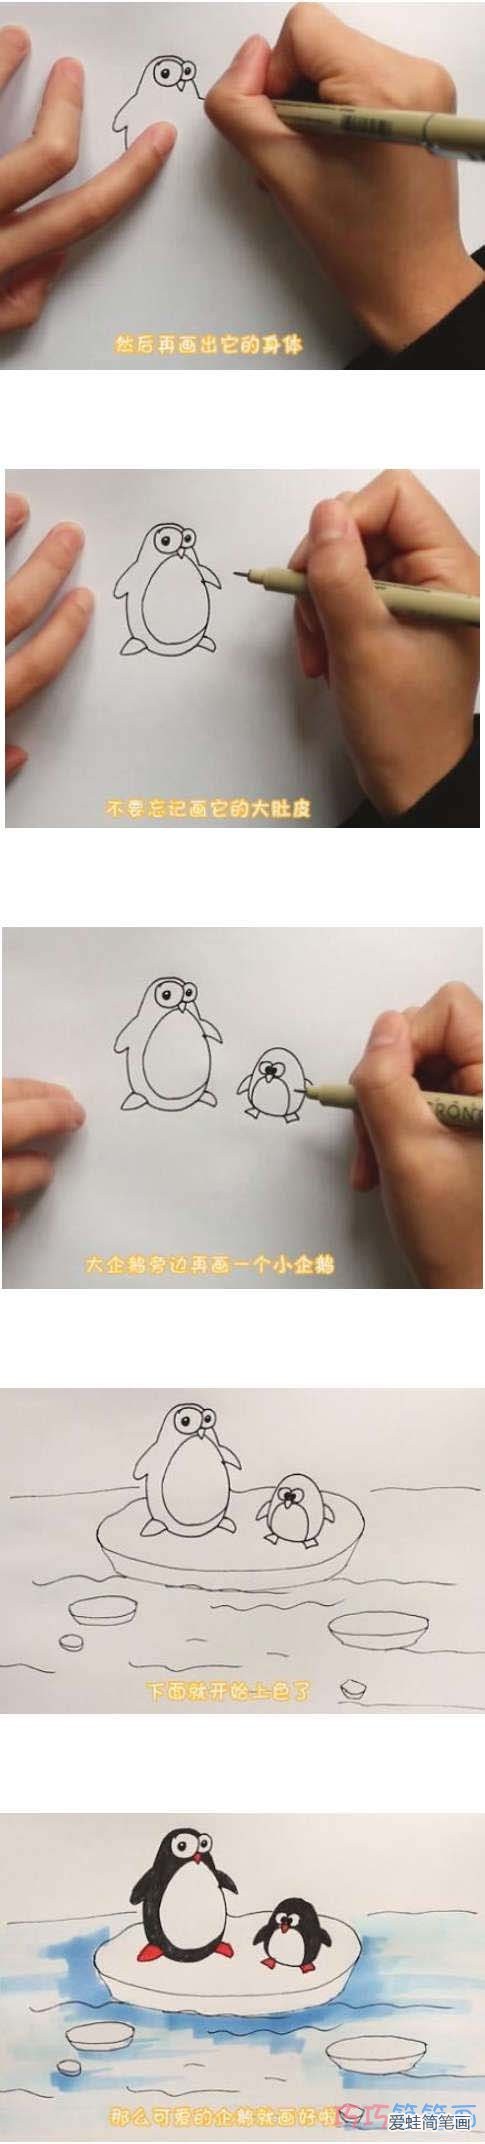 教你怎么画两只小企鹅简笔画